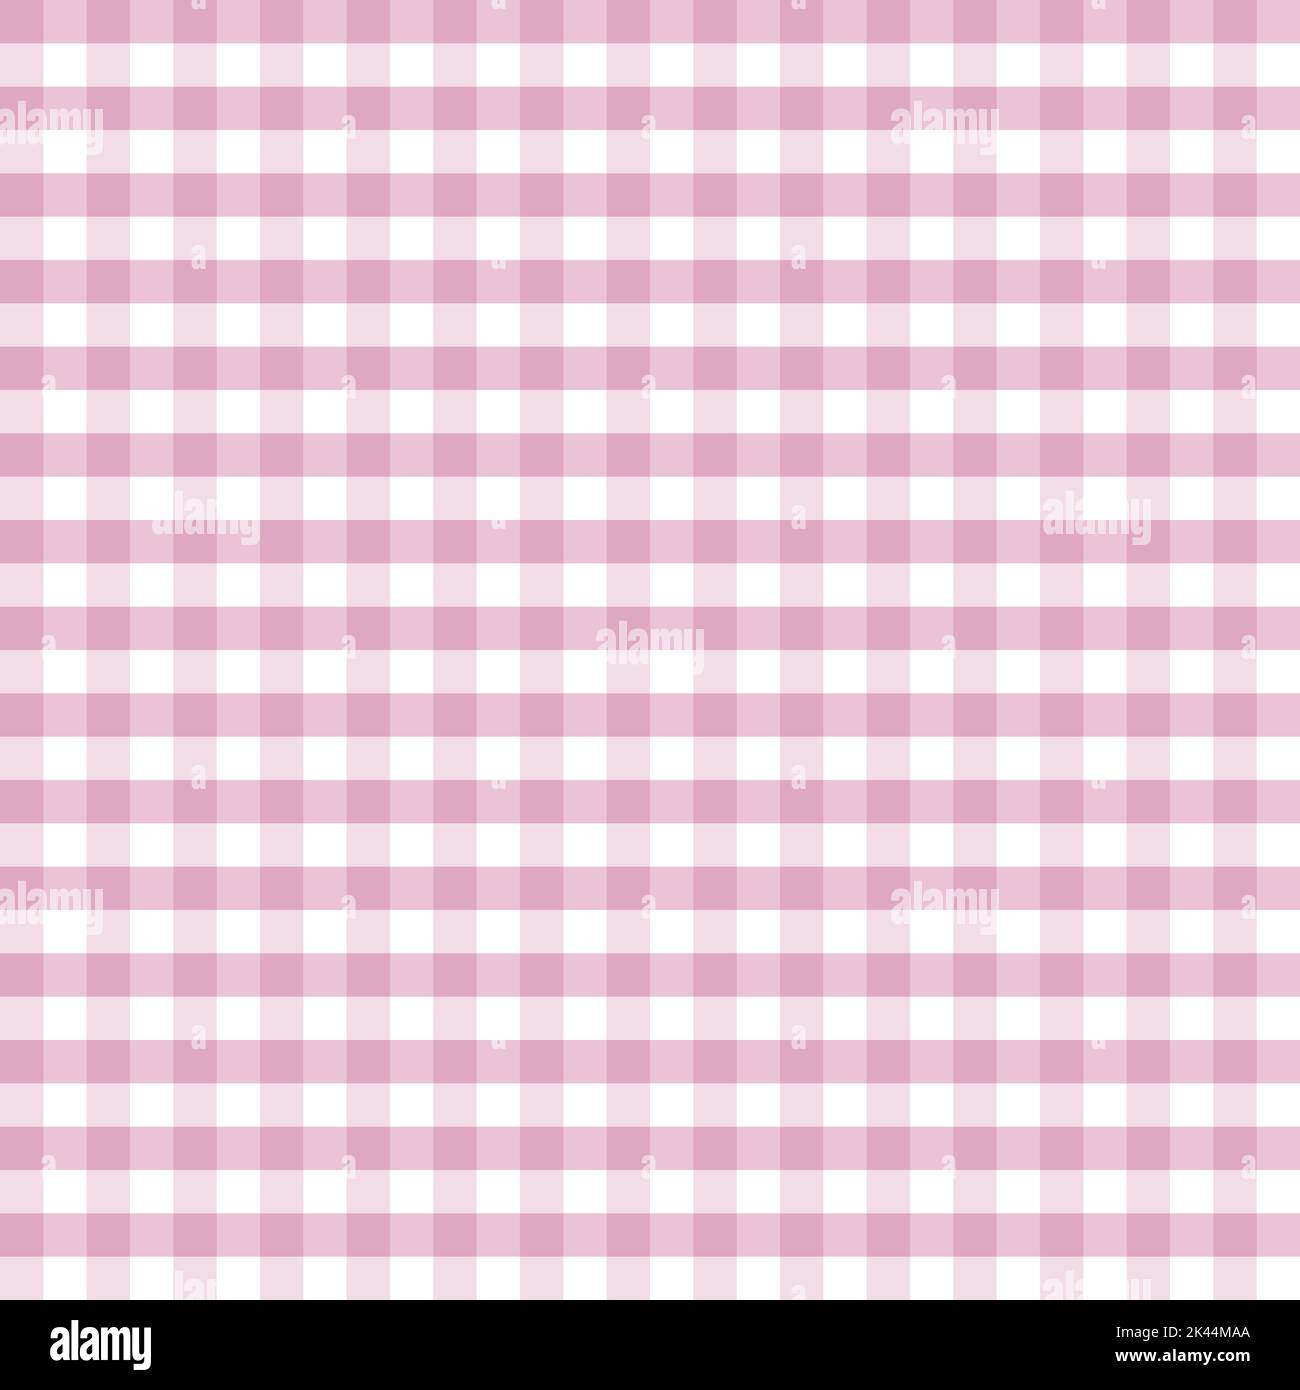 Modello rosa Gingham per abiti, tovaglie, plaid, camicie, abiti, carta, coperte, biancheria da letto, trapunte e prodotti tessili. Illustrazione vettoriale. Illustrazione Vettoriale